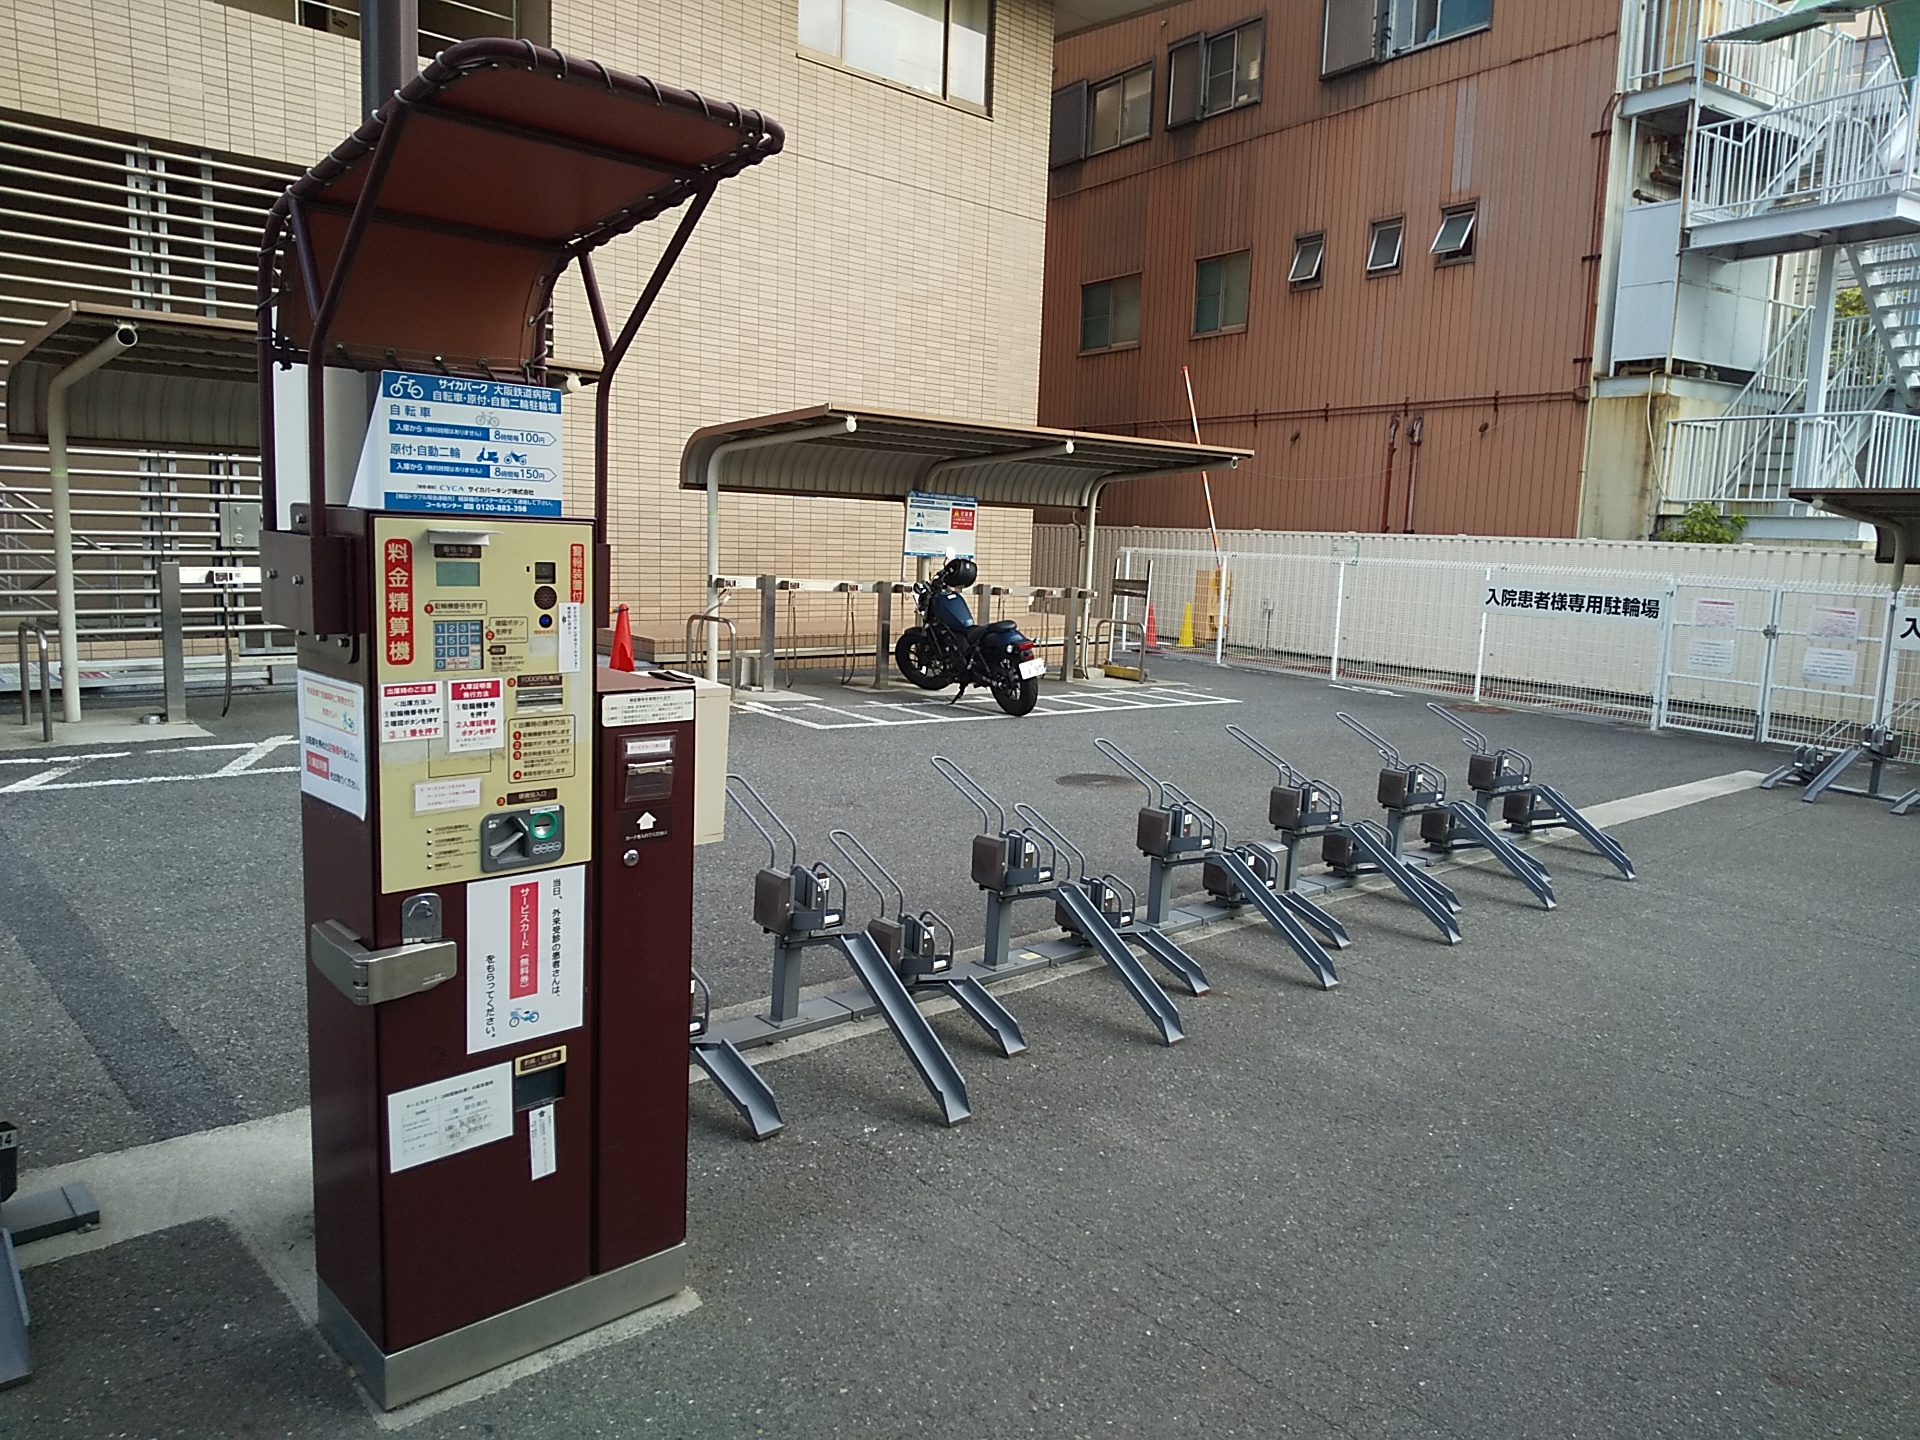 サイカパーク大阪鉄道病院有料自転車駐車場の画像